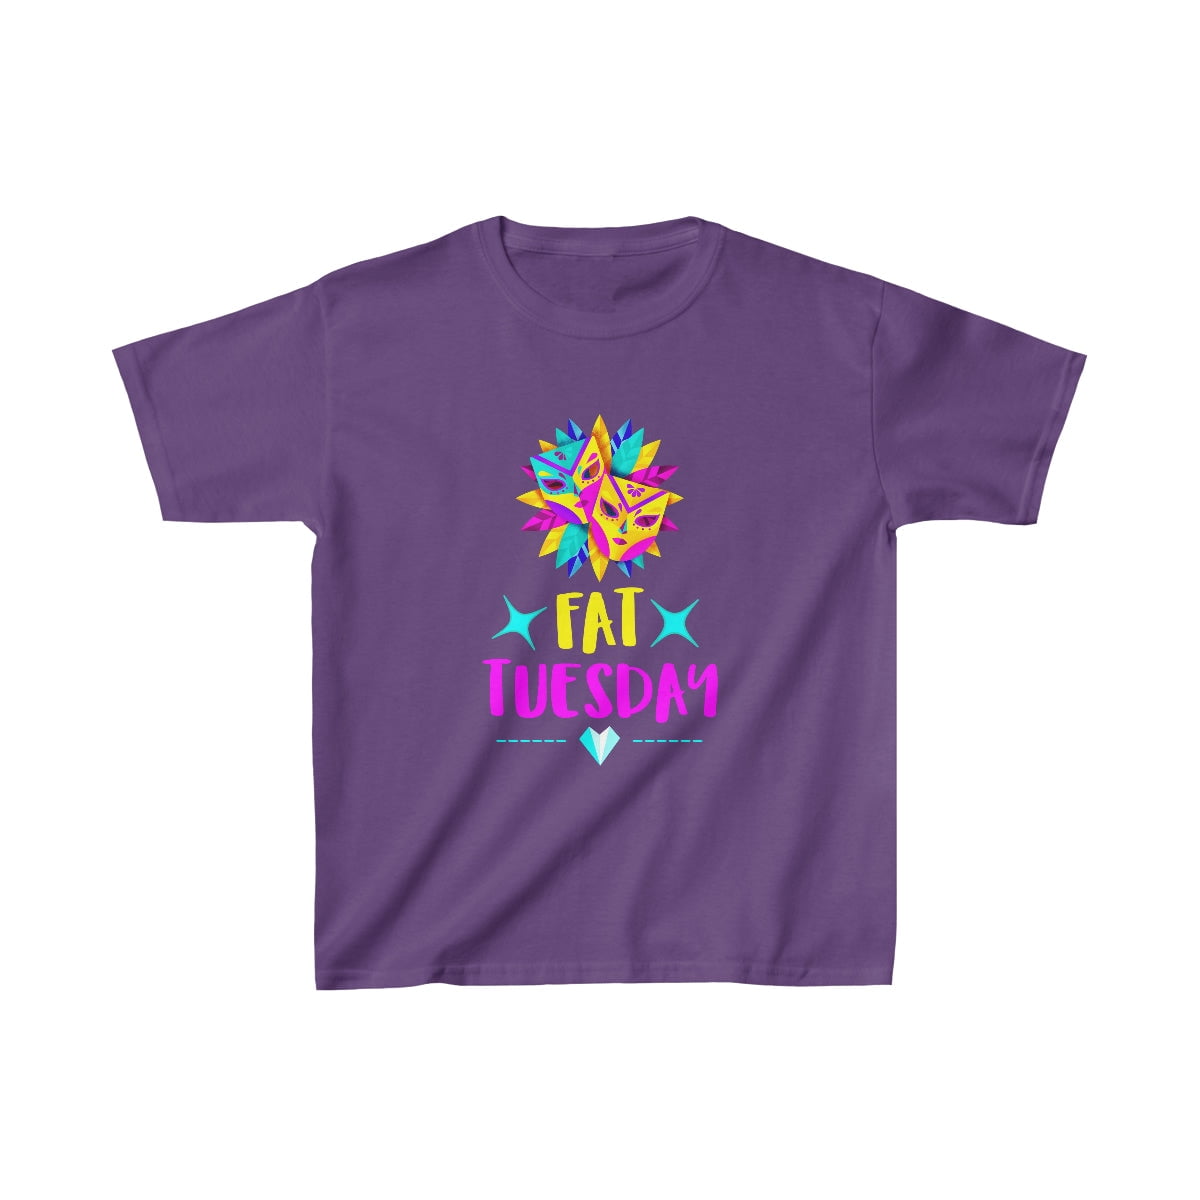 Mardi Gras Shirt, fleur de lis Shirt, Fat Tuesday Shirt,Flower de luce Shirt ,Louisiana Shirt,New Orleans Shirt,Womens Mardi Gras Shirt Kids T-Shirt  for Sale by DeepikaSingh